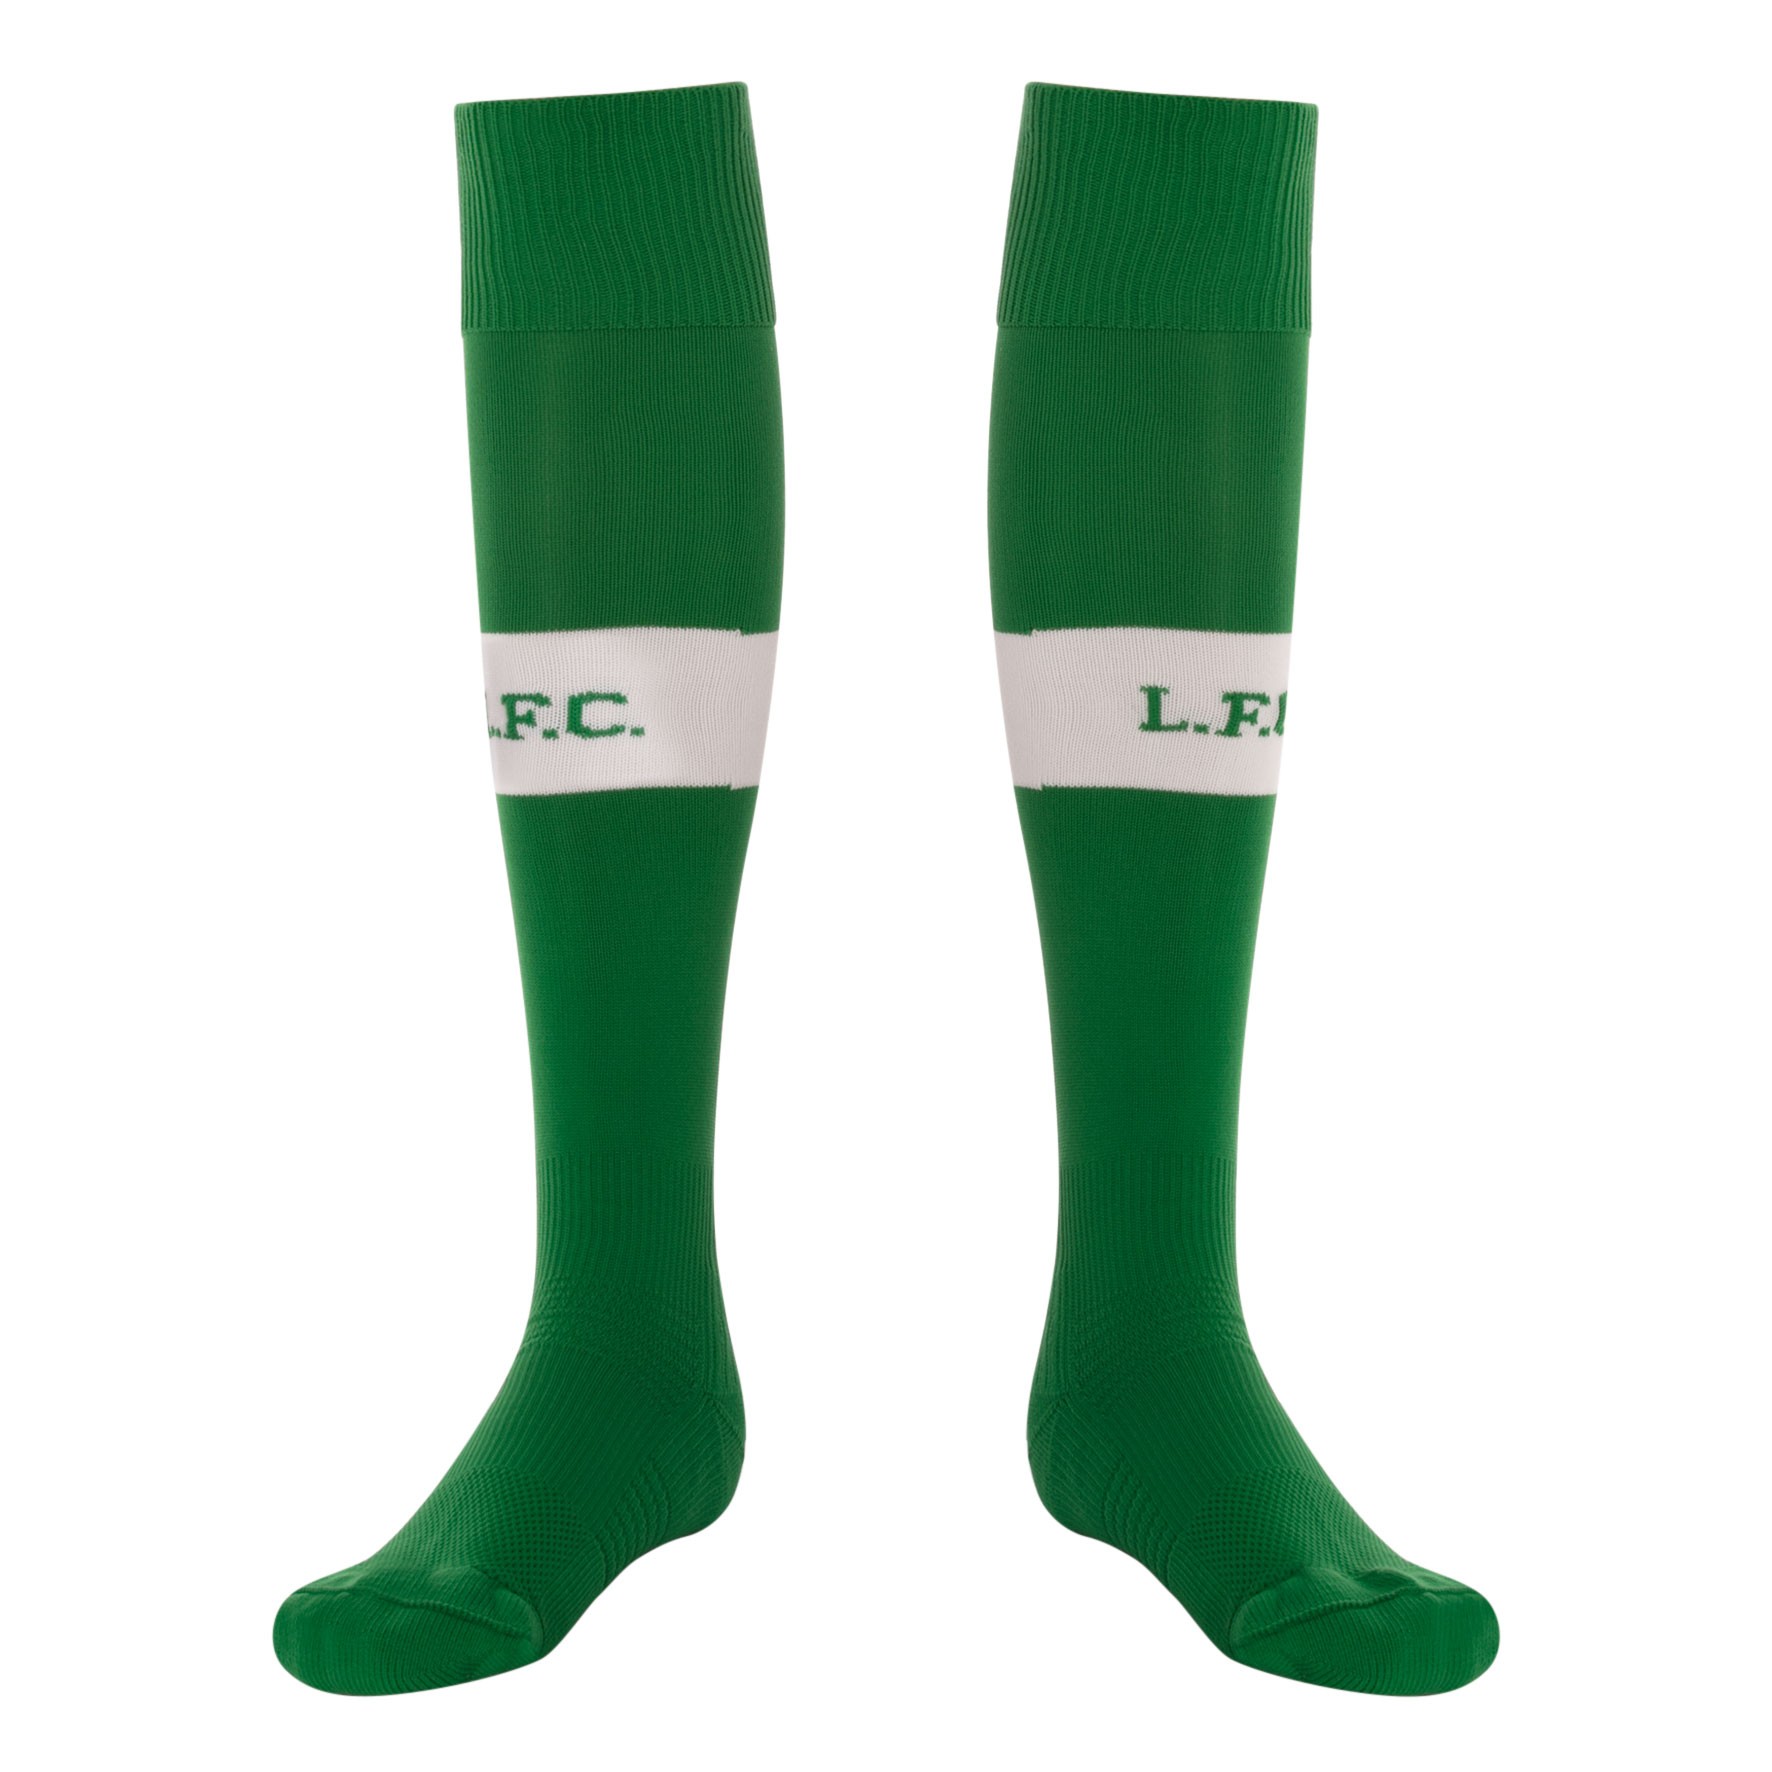 LFC Mens Home Goalkeeper Socks 17/18